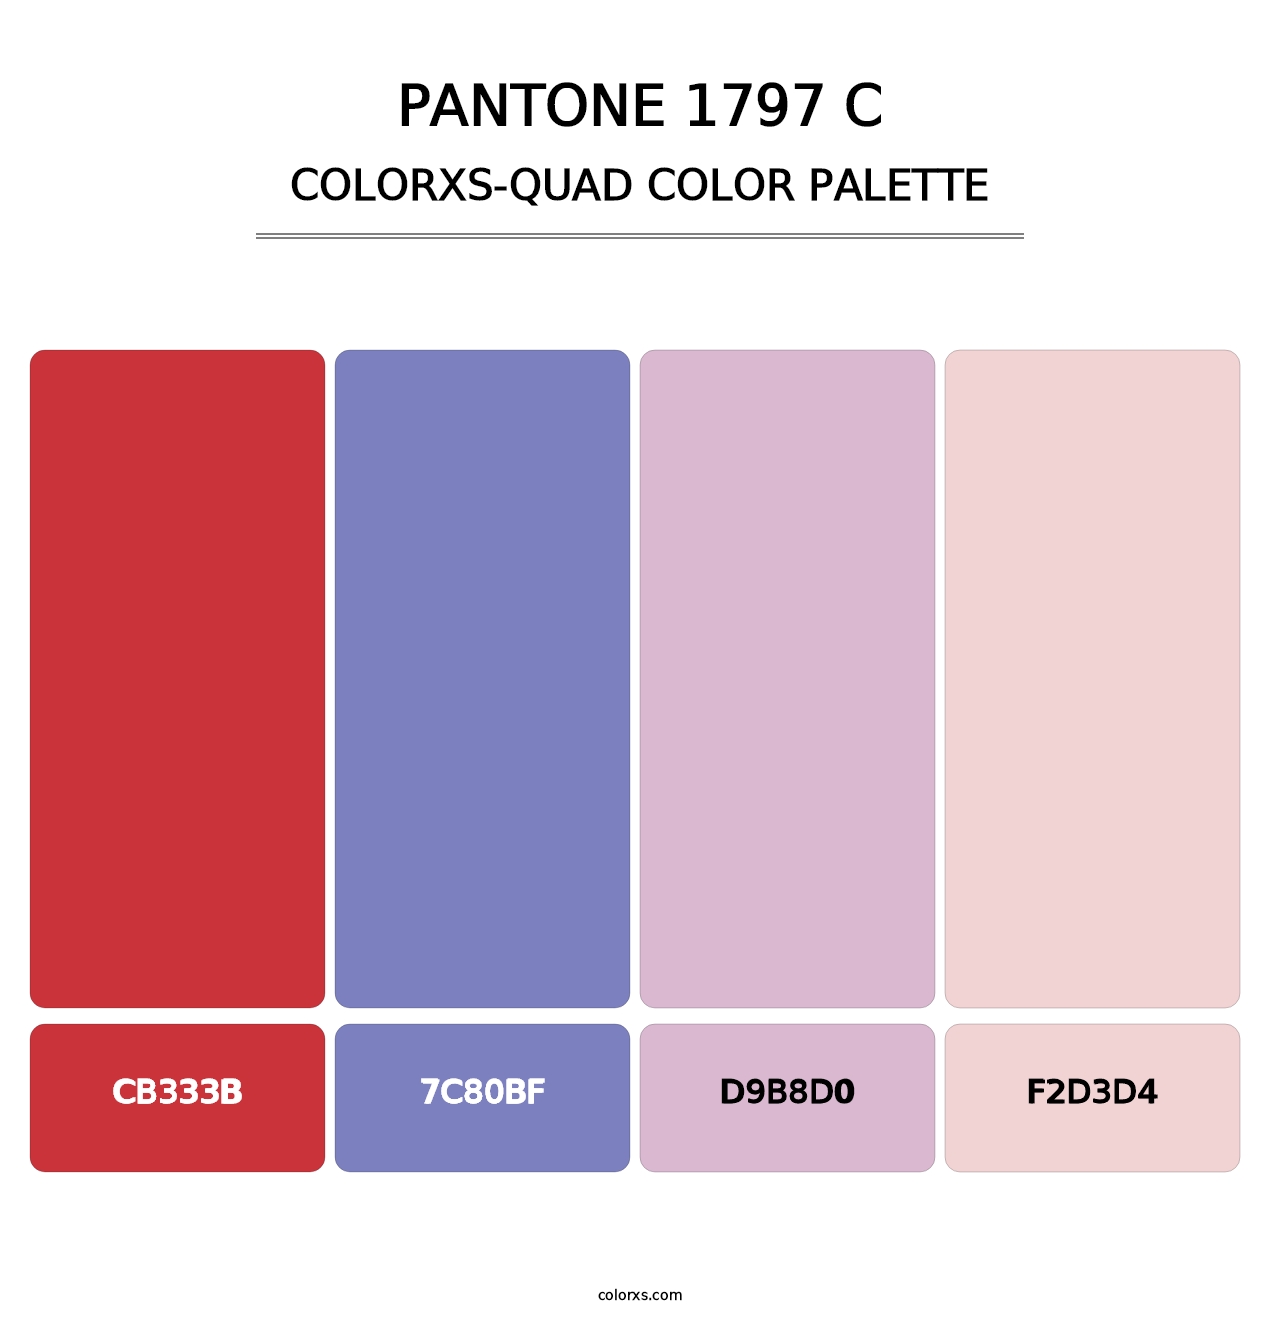 PANTONE 1797 C - Colorxs Quad Palette